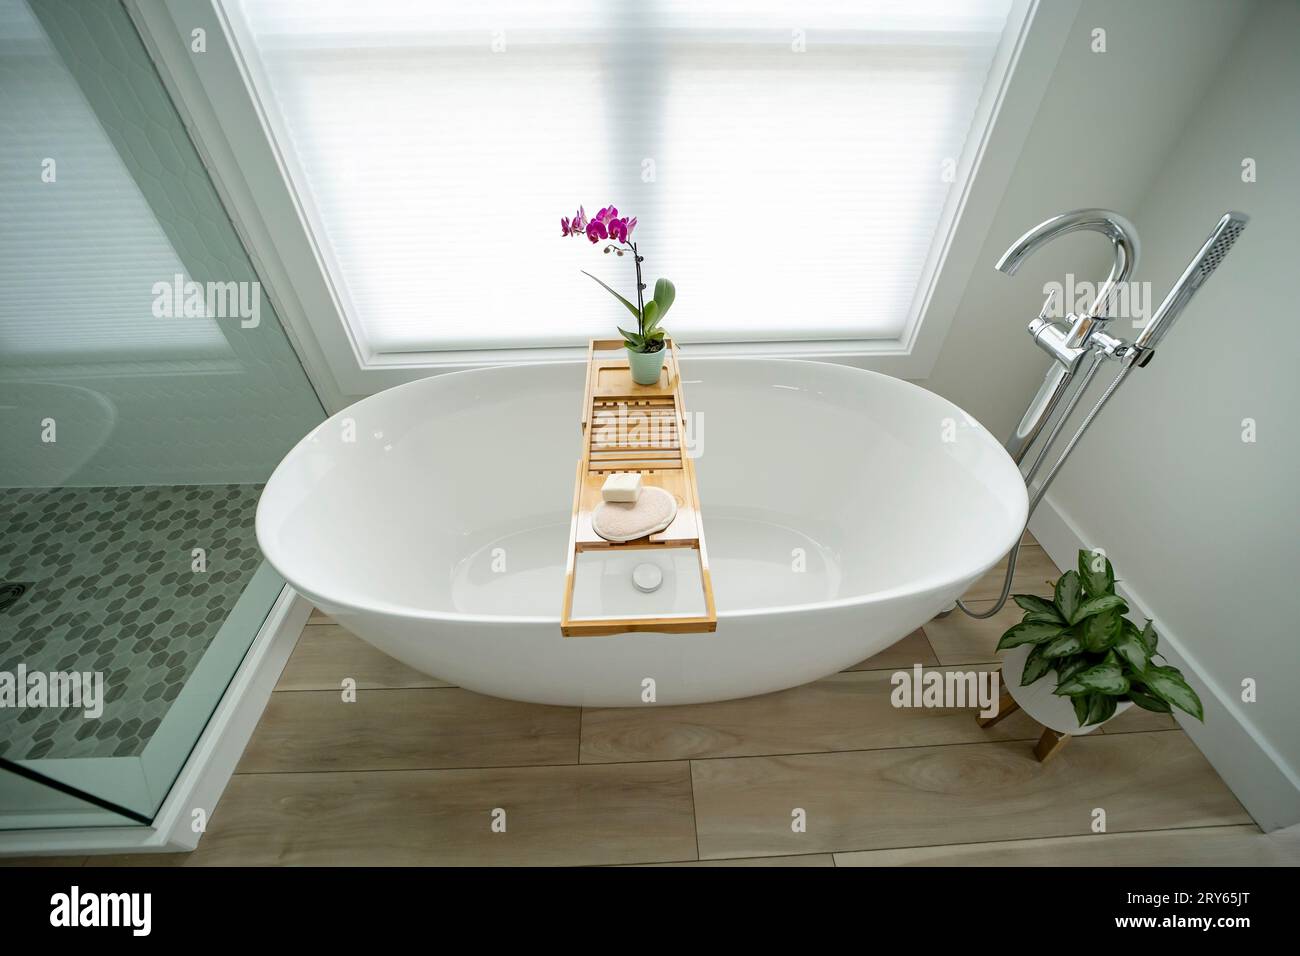 Elegant modern white freestanding bathtub with a tray Stock Photo